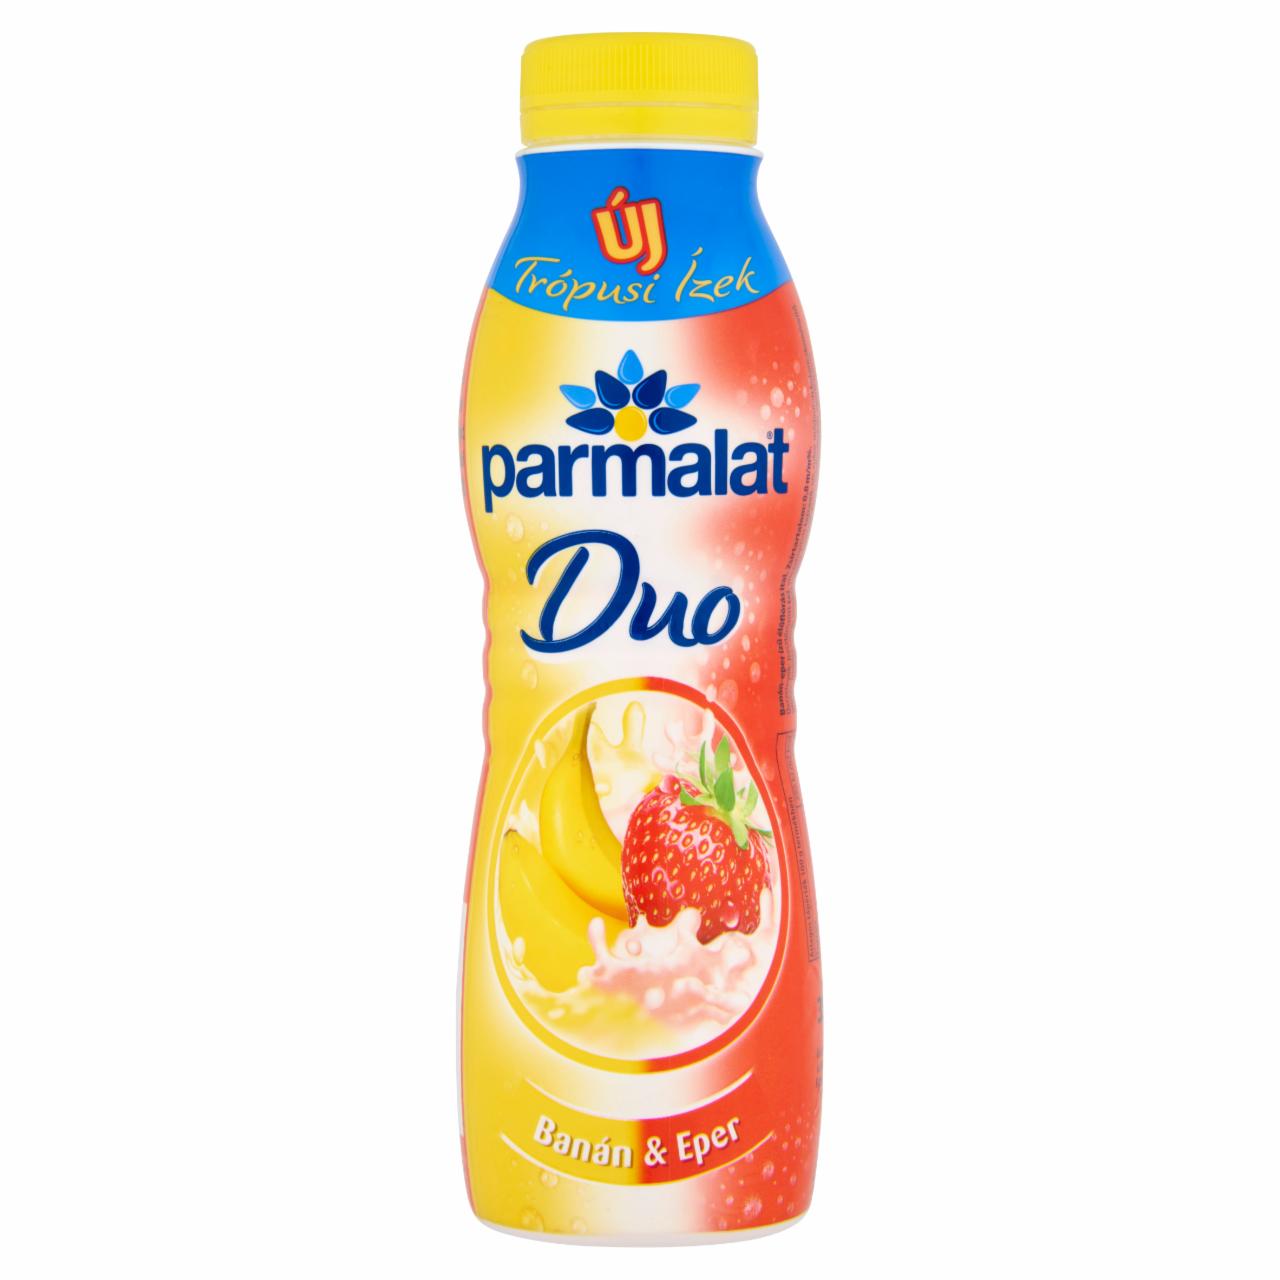 Képek - Parmalat Duo banán-eper ízű élőflórás ital 350 g